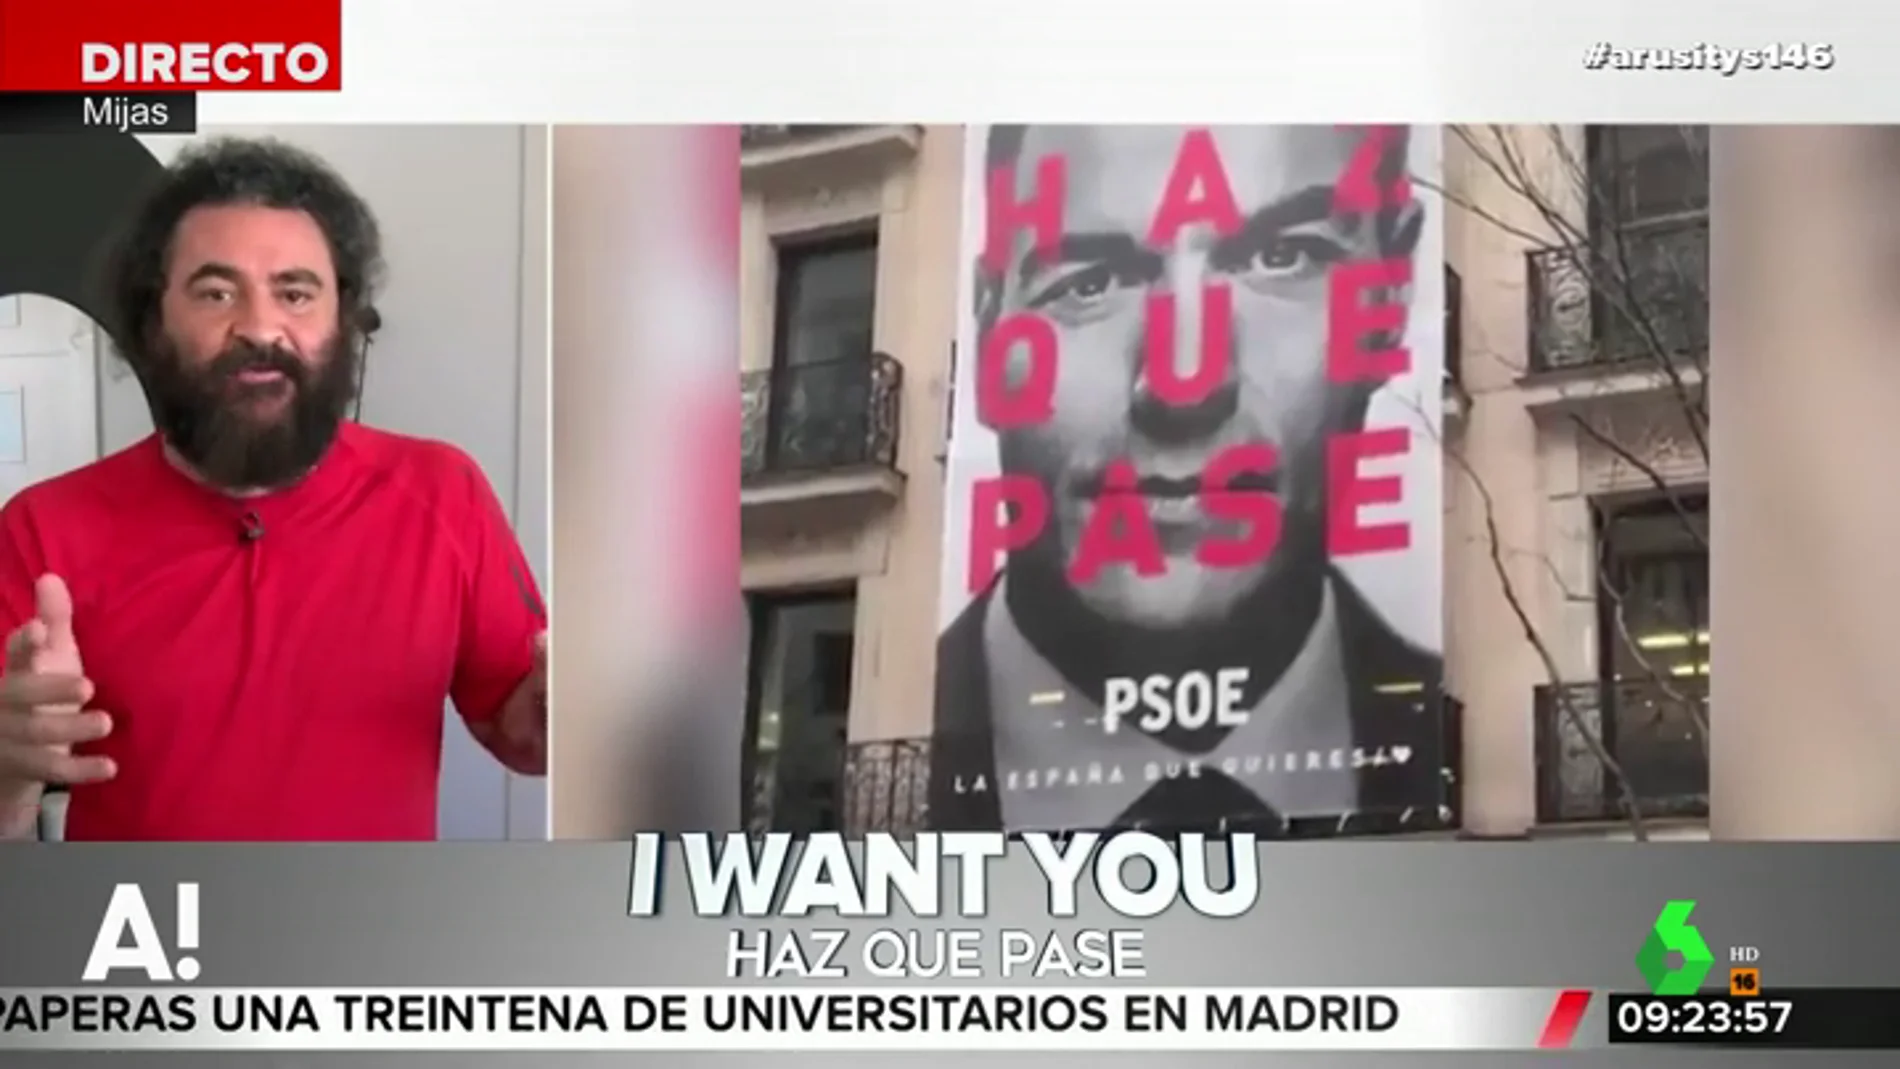 La reflexión de El Sevilla sobre el nuevo lema del PSOE